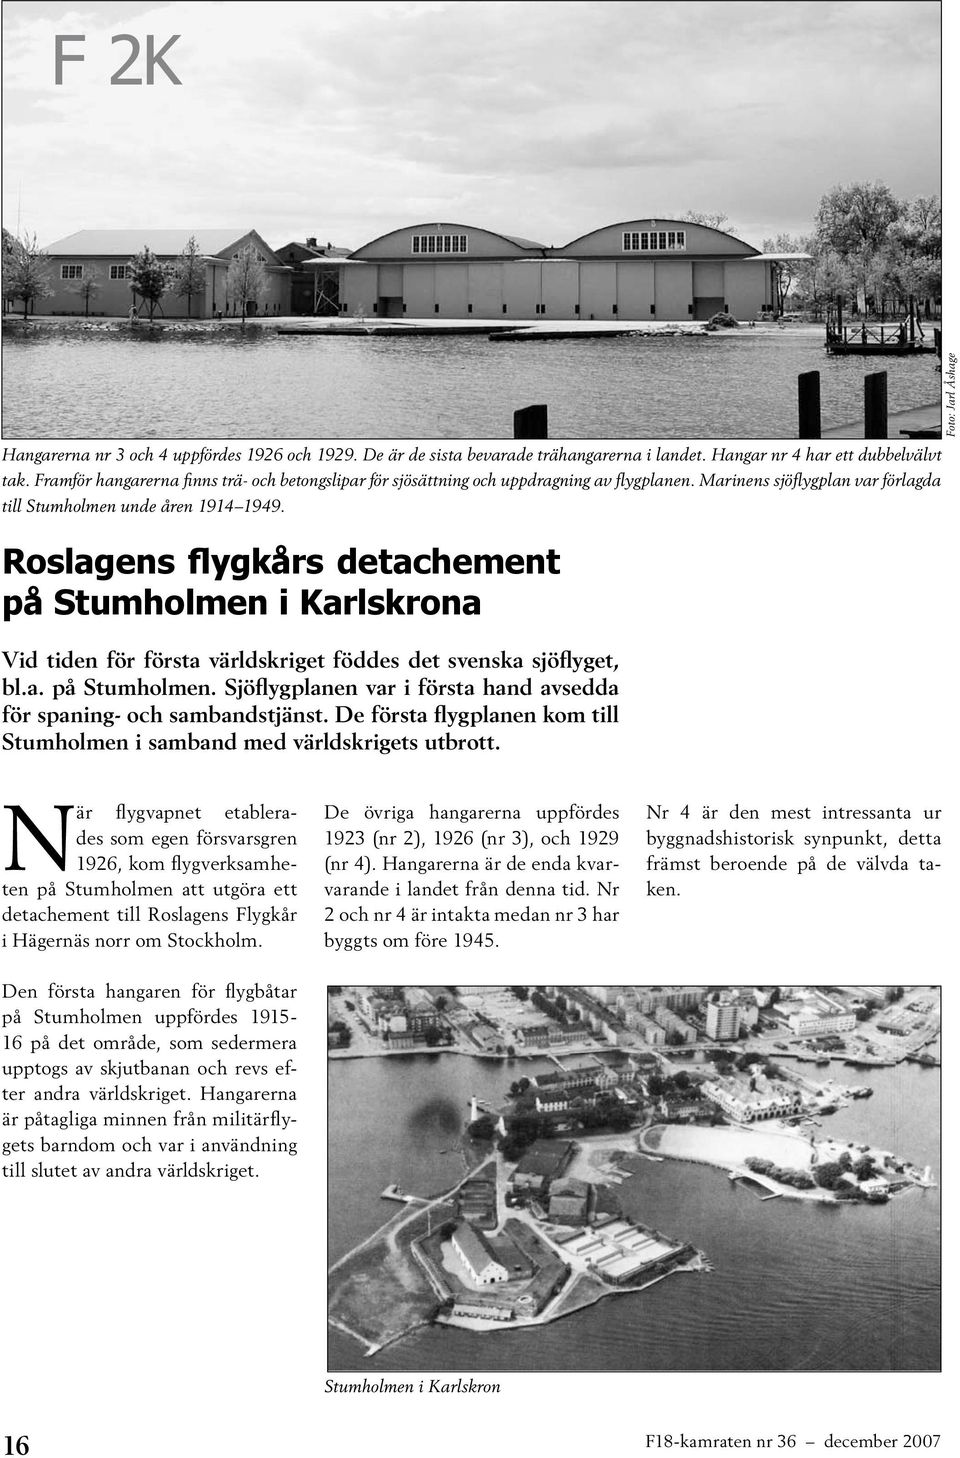 Roslagens flygkårs detachement på Stumholmen i Karlskrona Vid tiden för första världskriget föddes det svenska sjöflyget, bl.a. på Stumholmen. Sjöflygplanen var i första hand avsedda för spaning- och sambandstjänst.